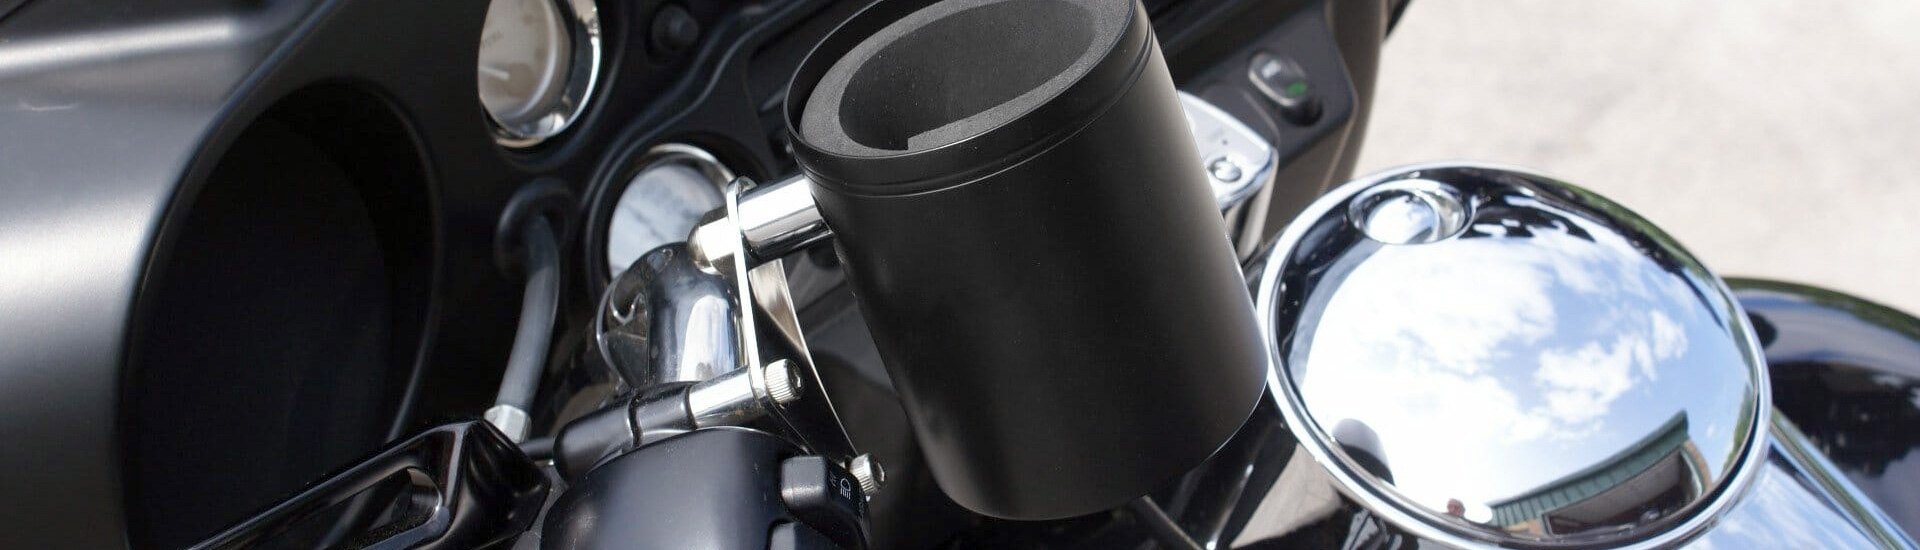 Universal Motorcycle Beverage Mugs & Holders